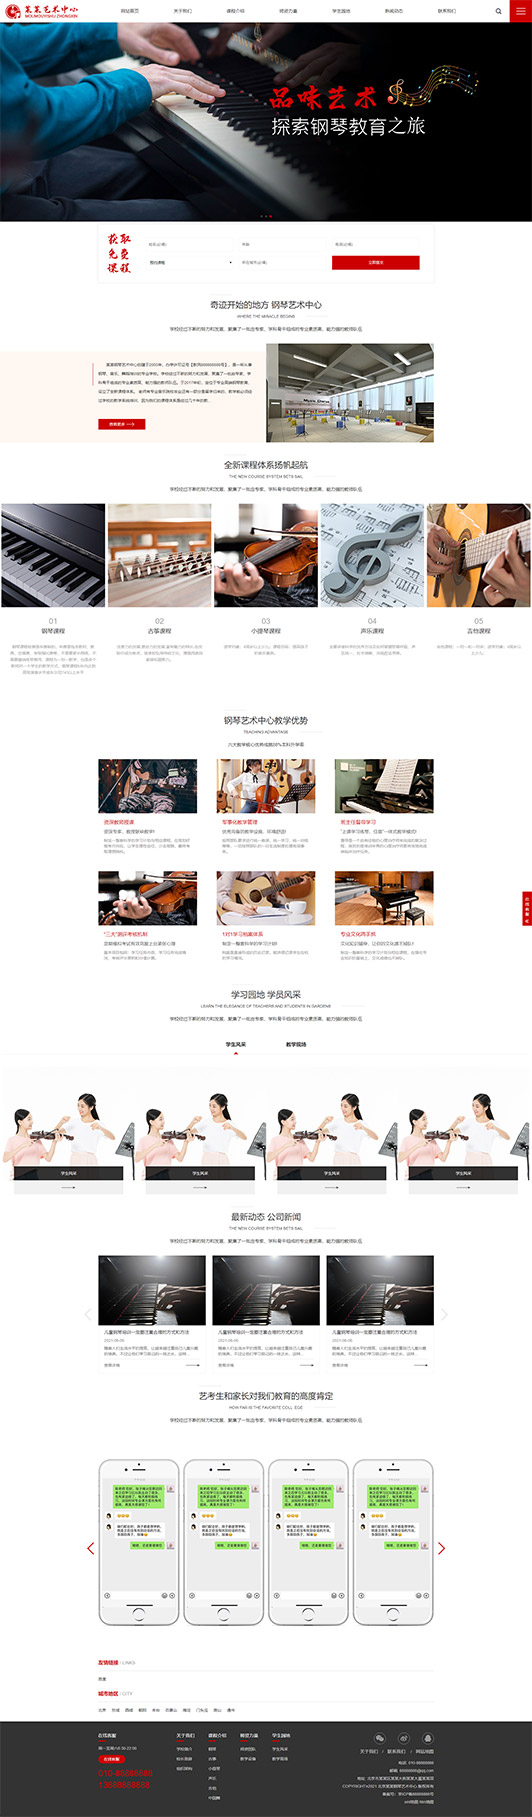 定安钢琴艺术培训公司响应式企业网站